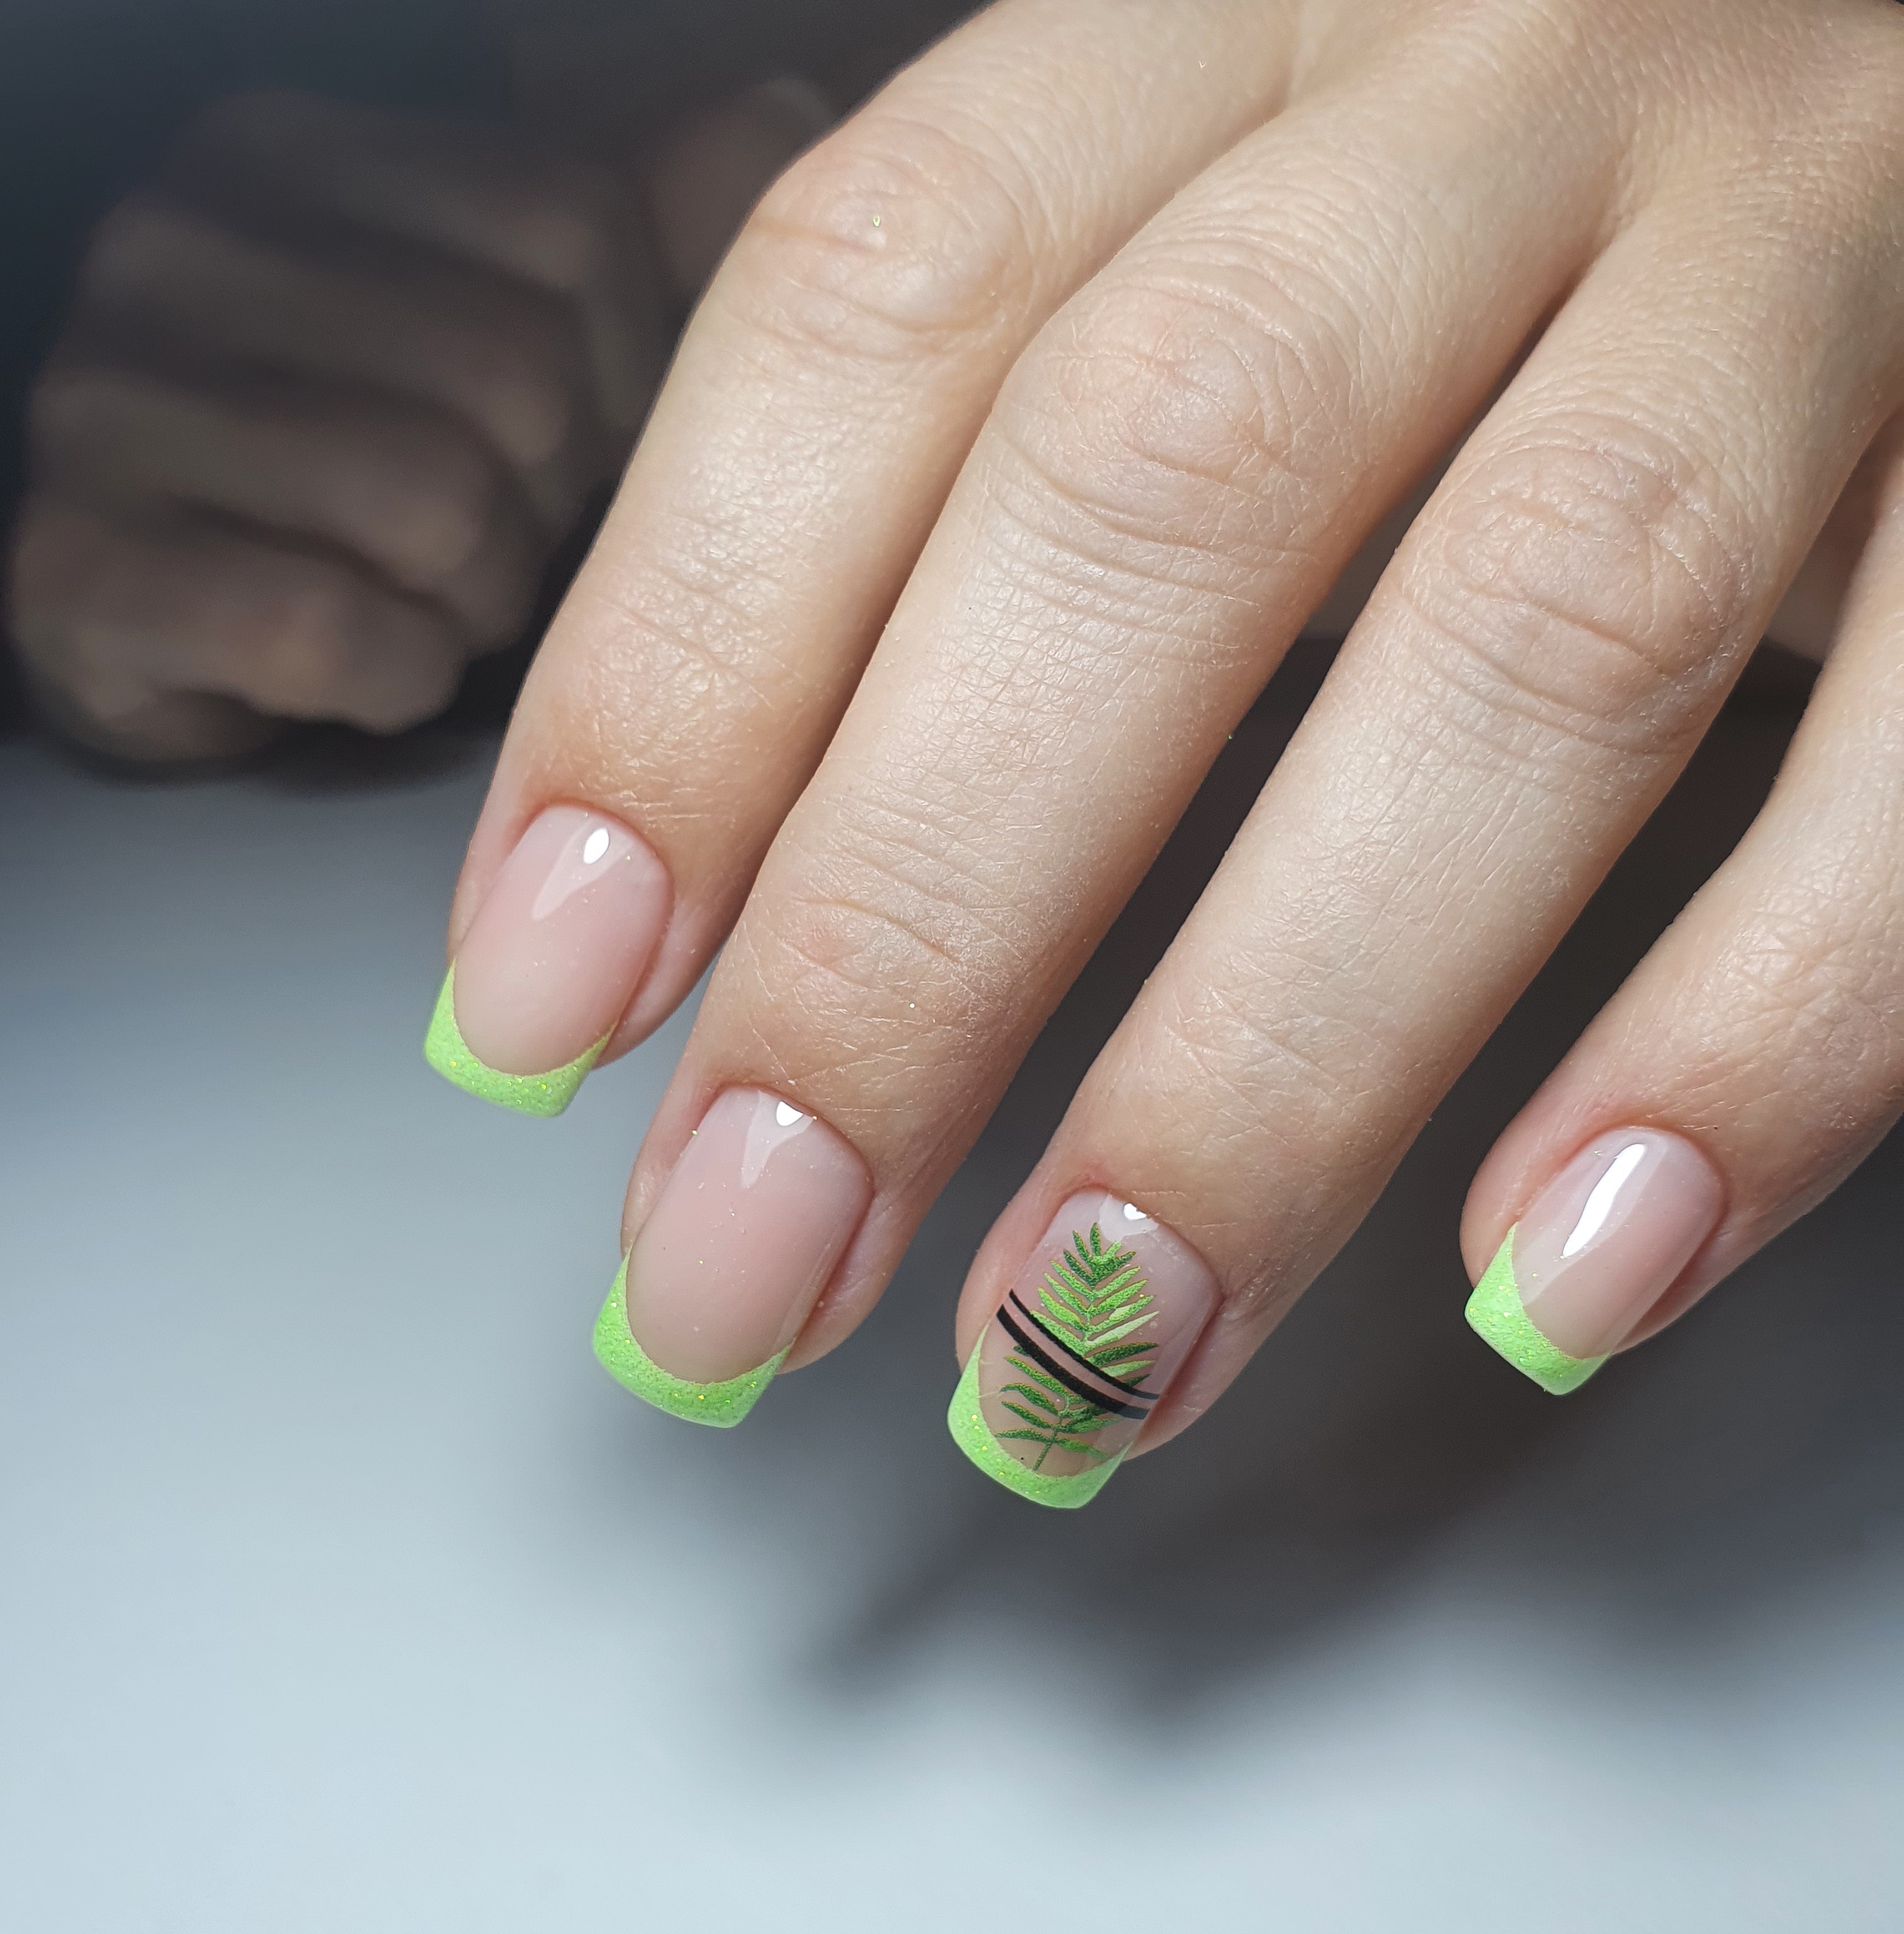 Френч с растительным слайдером в салатовом цвете на короткие ногти.